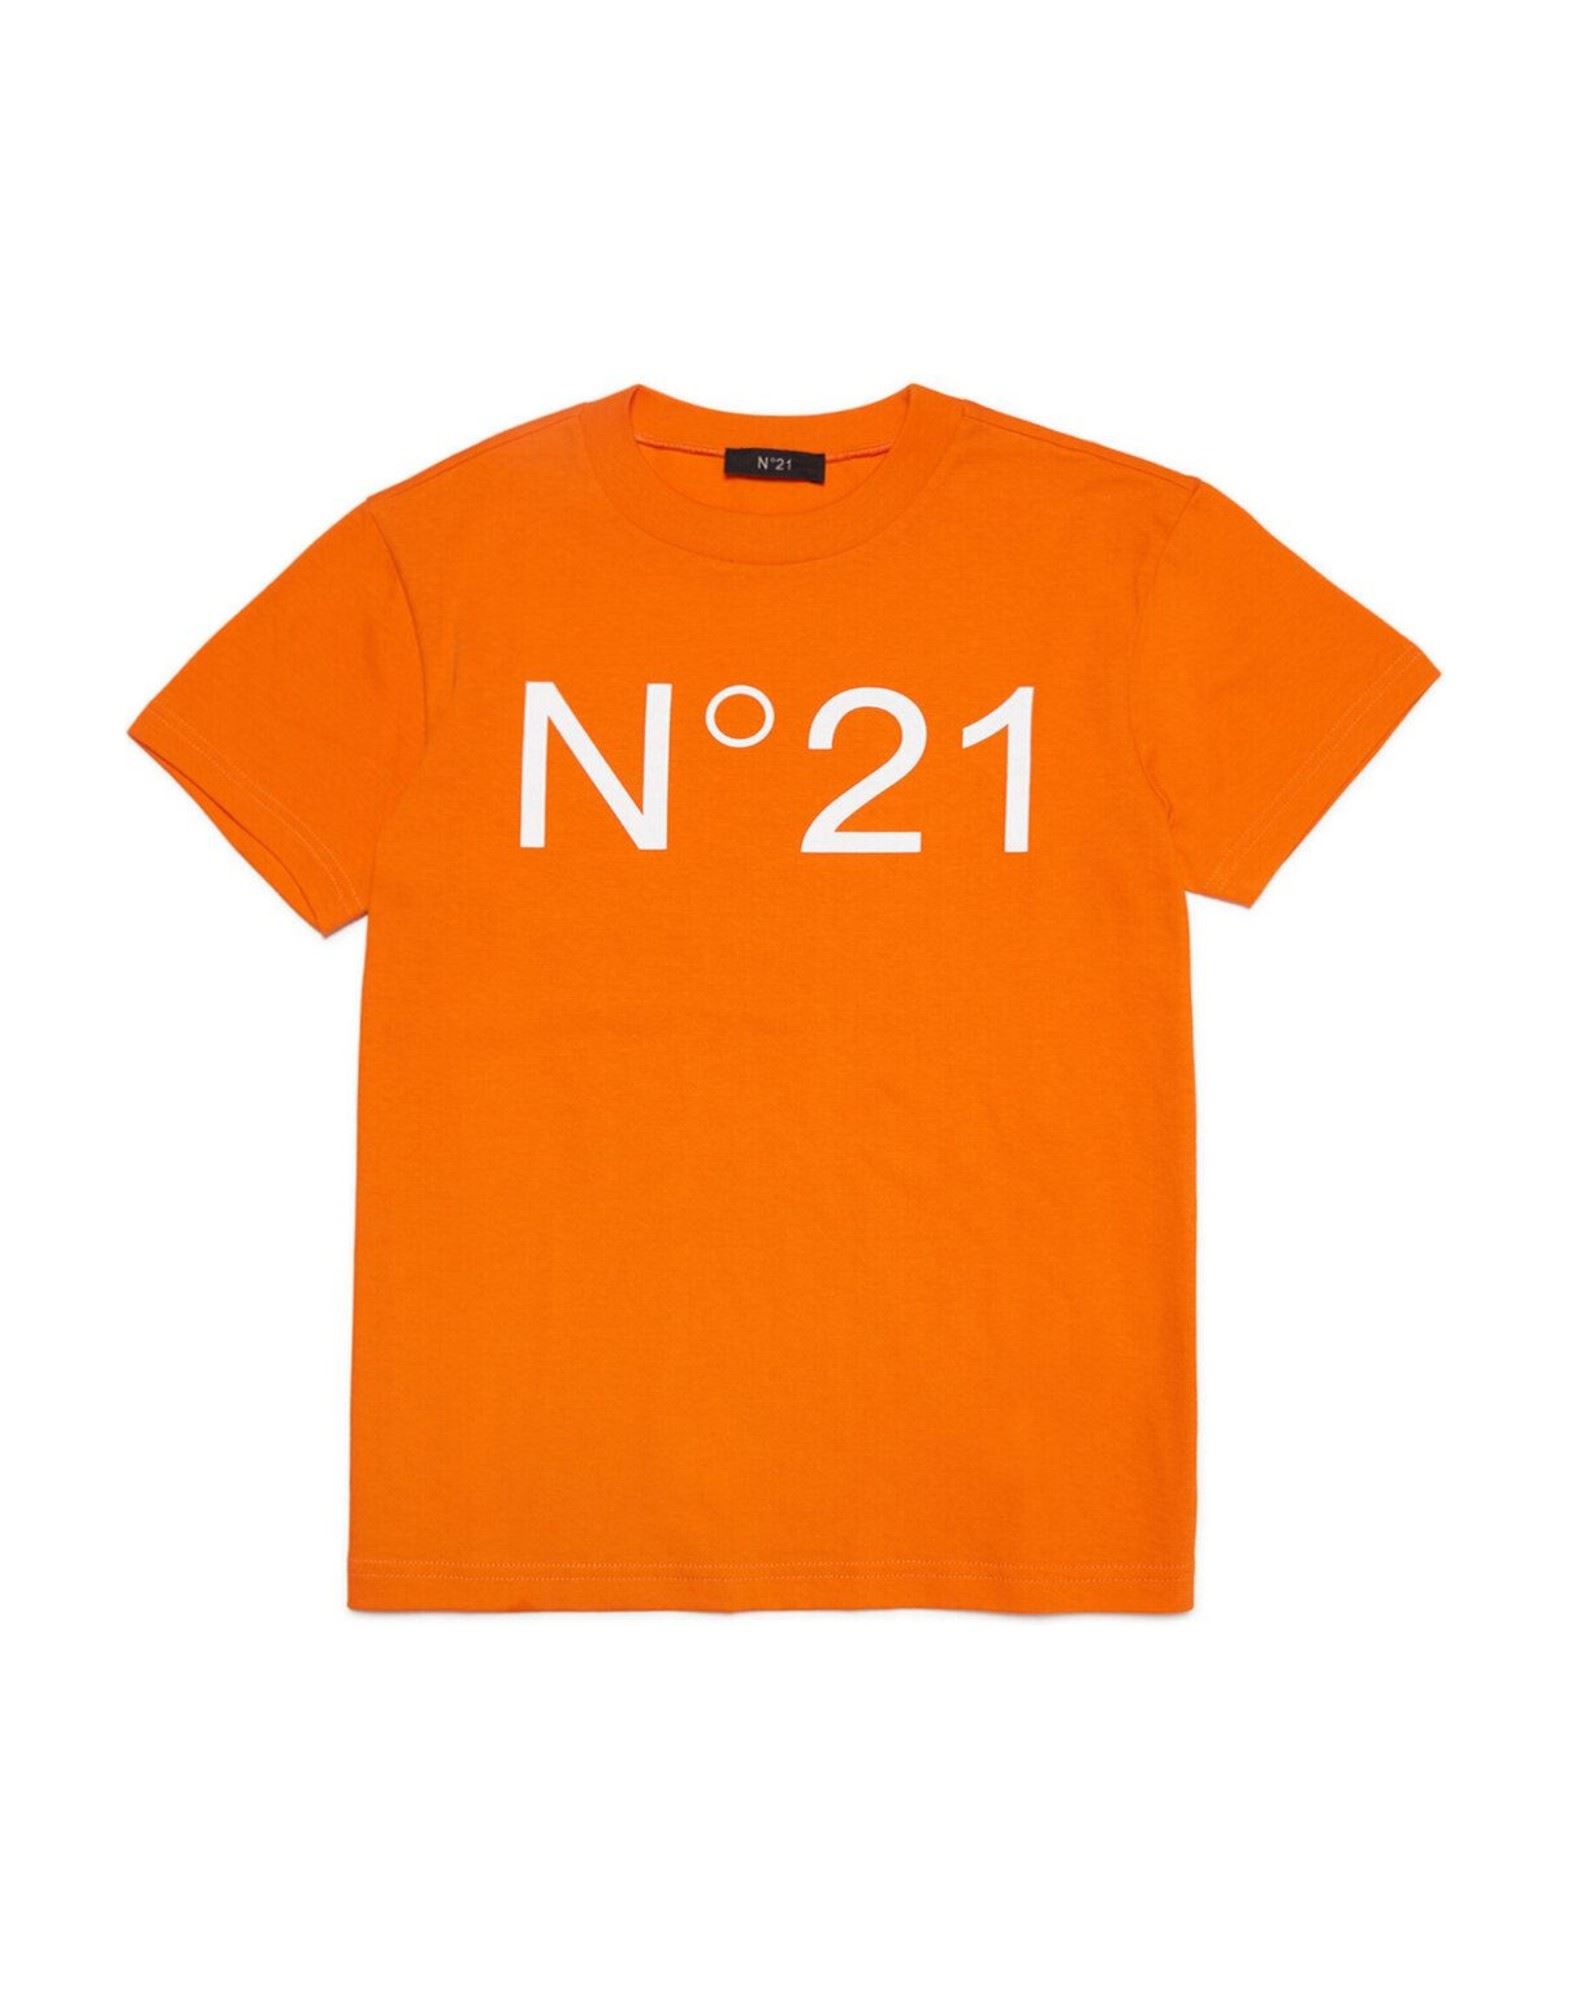 N°21 T-shirts Kinder Orange von N°21